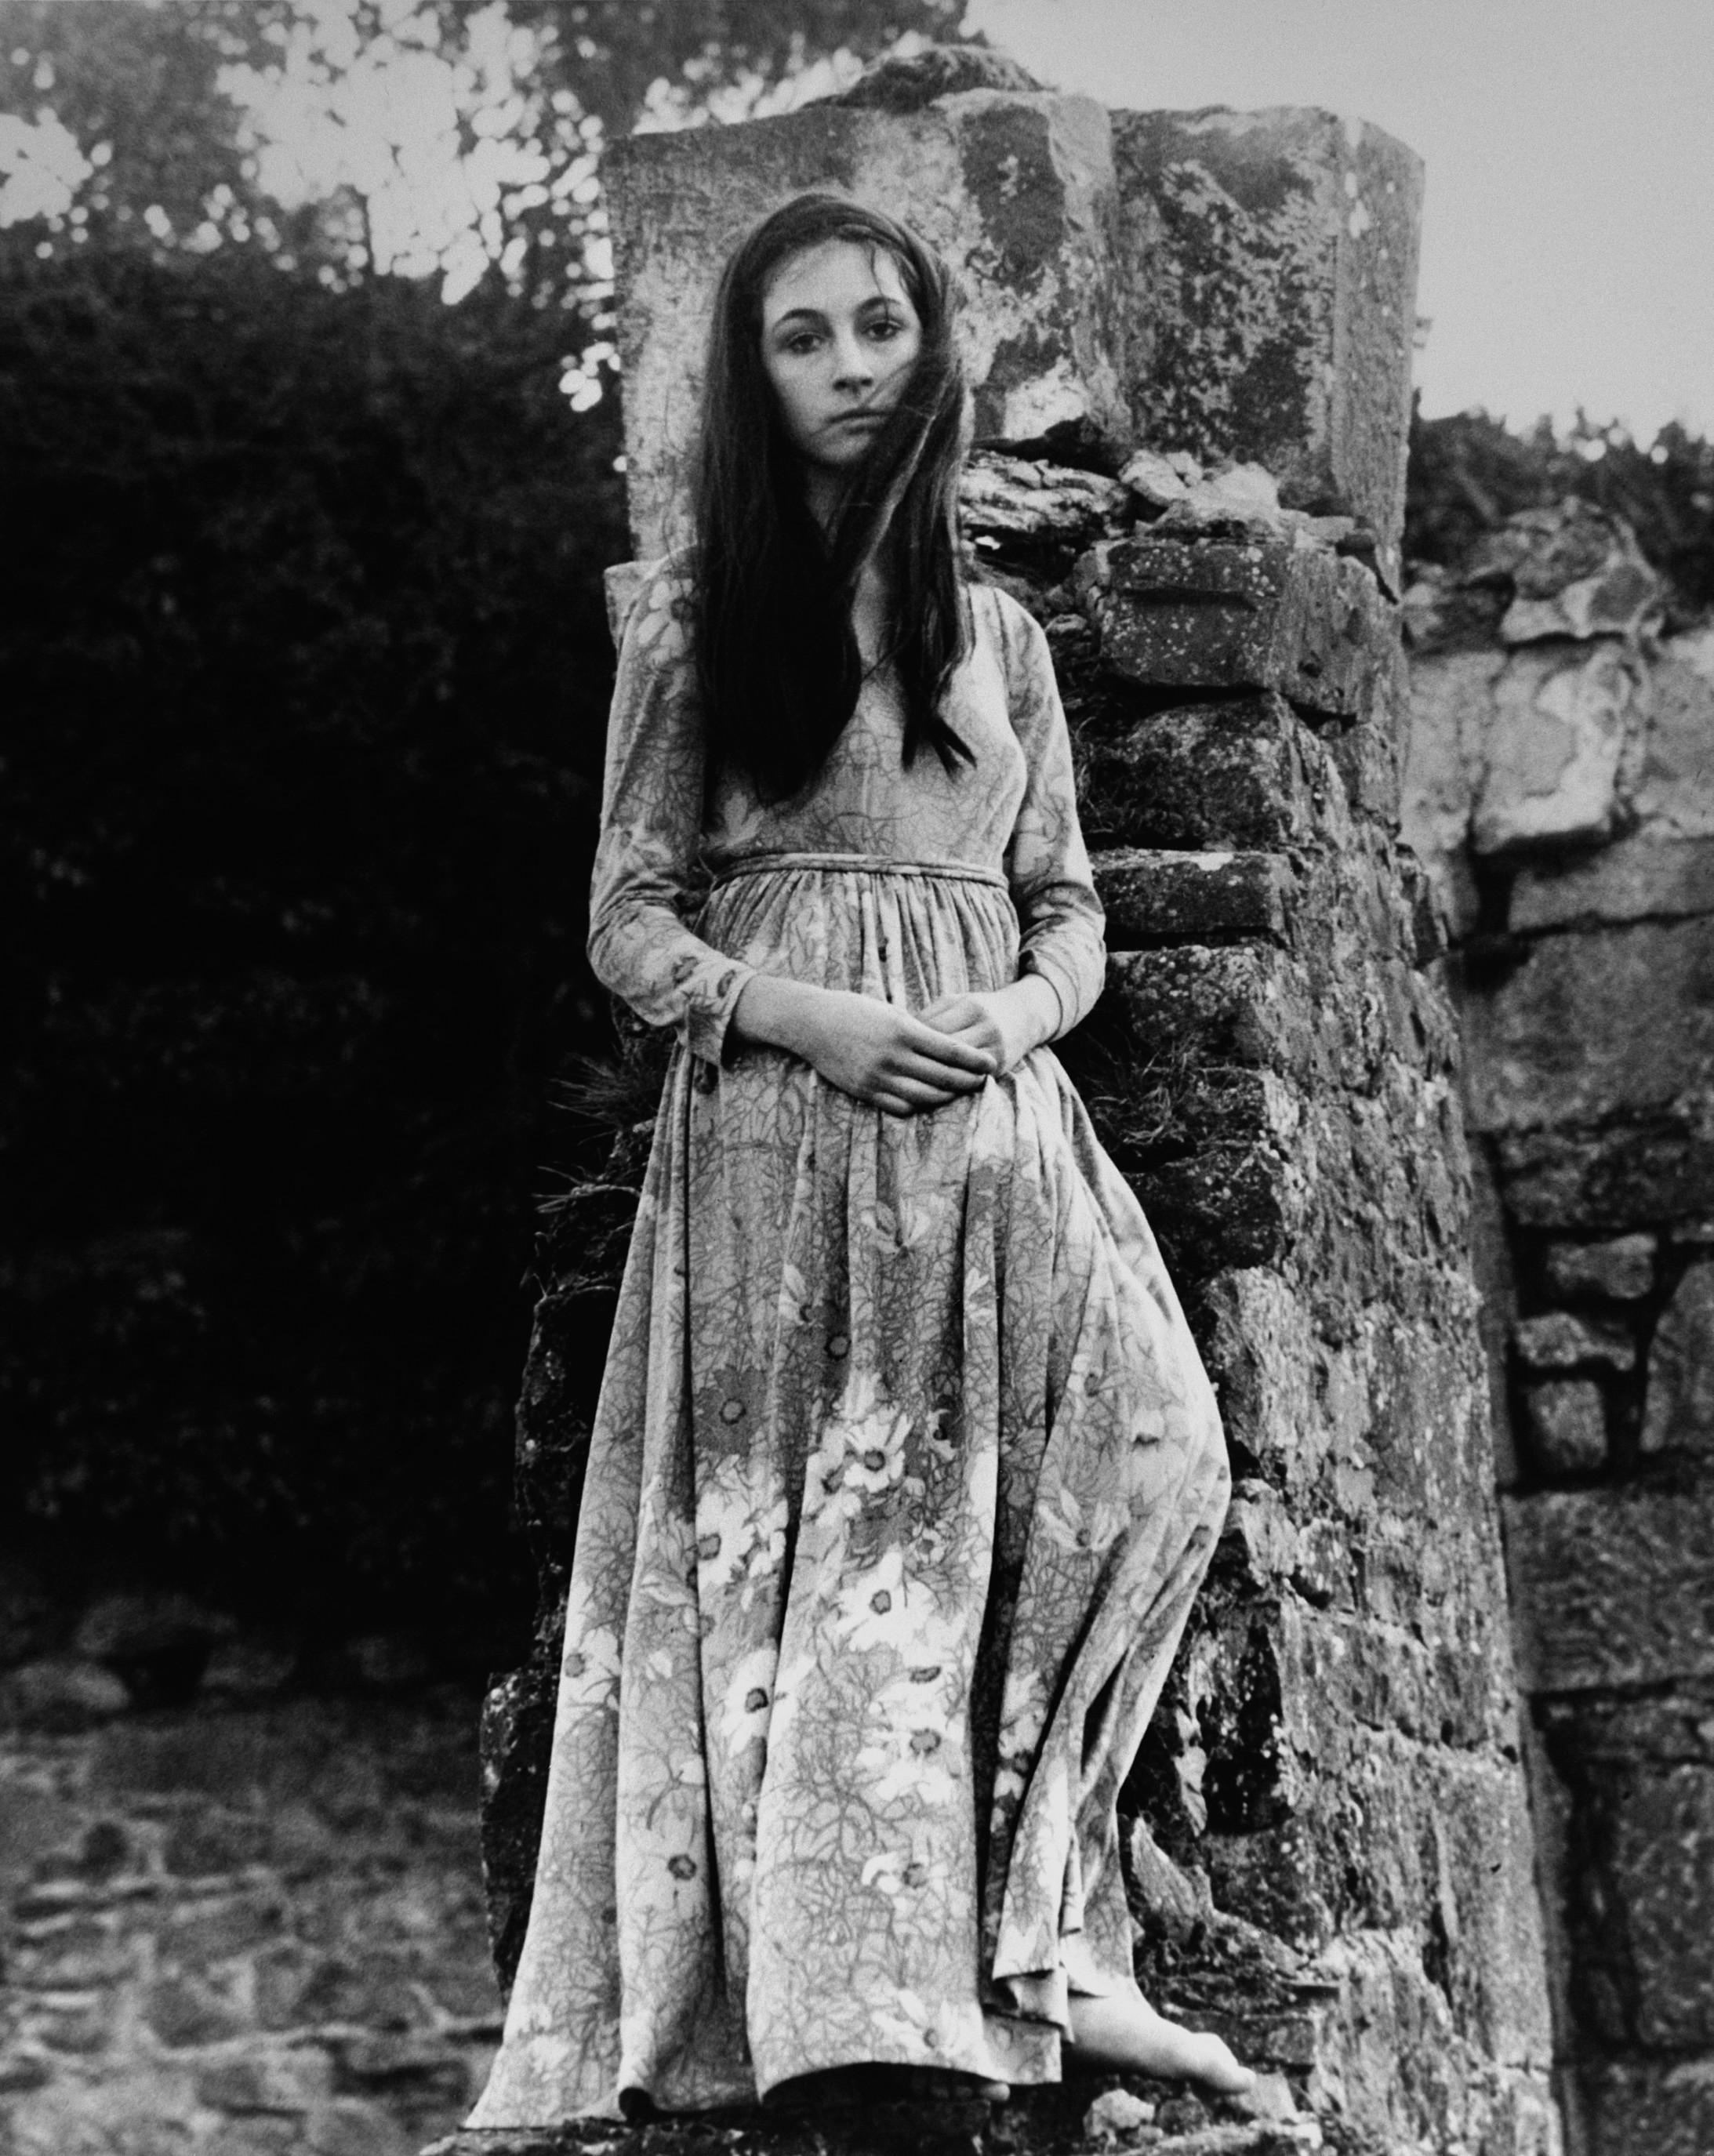 Angelica Huston im Alter von 16 Jahren, 1968, © Eve Arnold/Magnum Photos